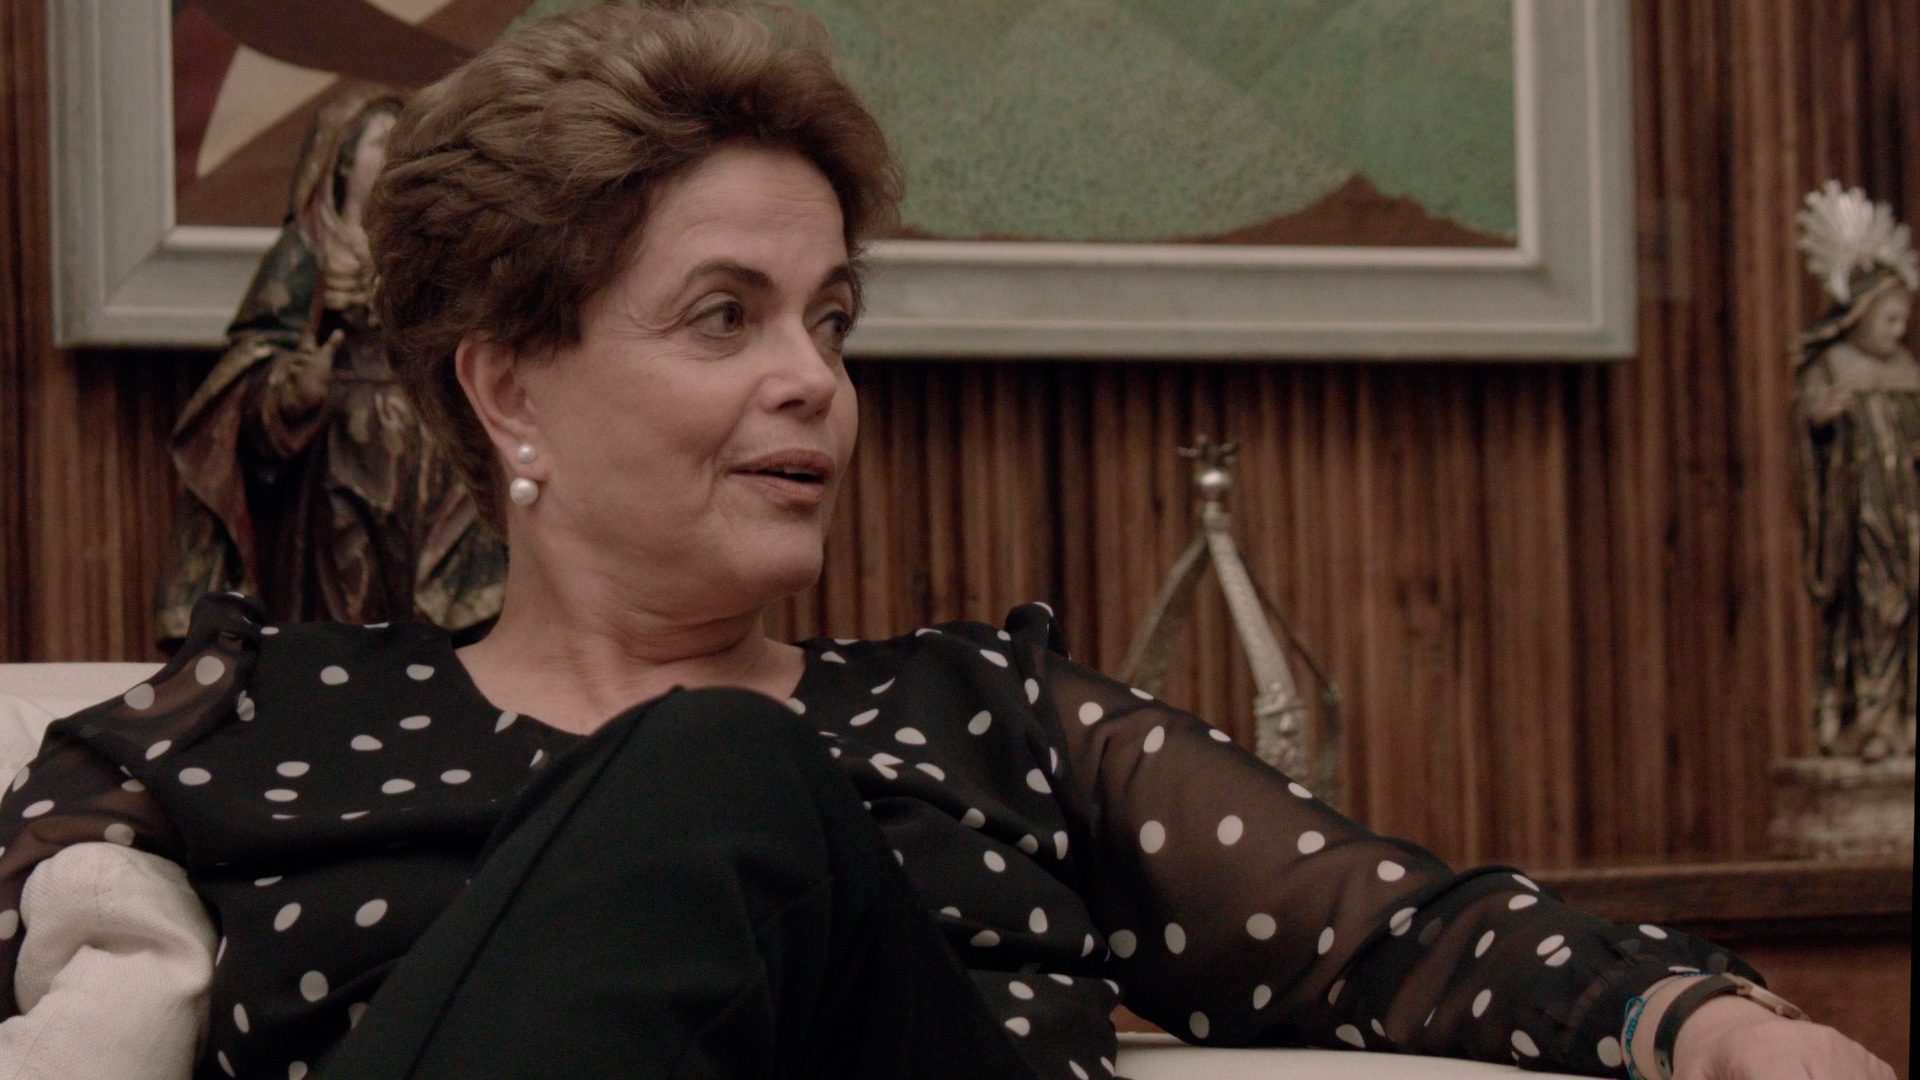 Cena do filme Alvorada. A imagem mostra a ex-presidenta Dilma Rouseff sentada num sofá, com as pernas cruzadas, conversando. Dilma, uma mulher branca, de cabelos curtos loiros escuros, usa uma camisa preta de bolinhas brancas e calça preta, e um brinco de pérola. Dilma olha para o lado direito da imagem, e ao fundo, existe um quadro e uma estante com enfeites de metal.